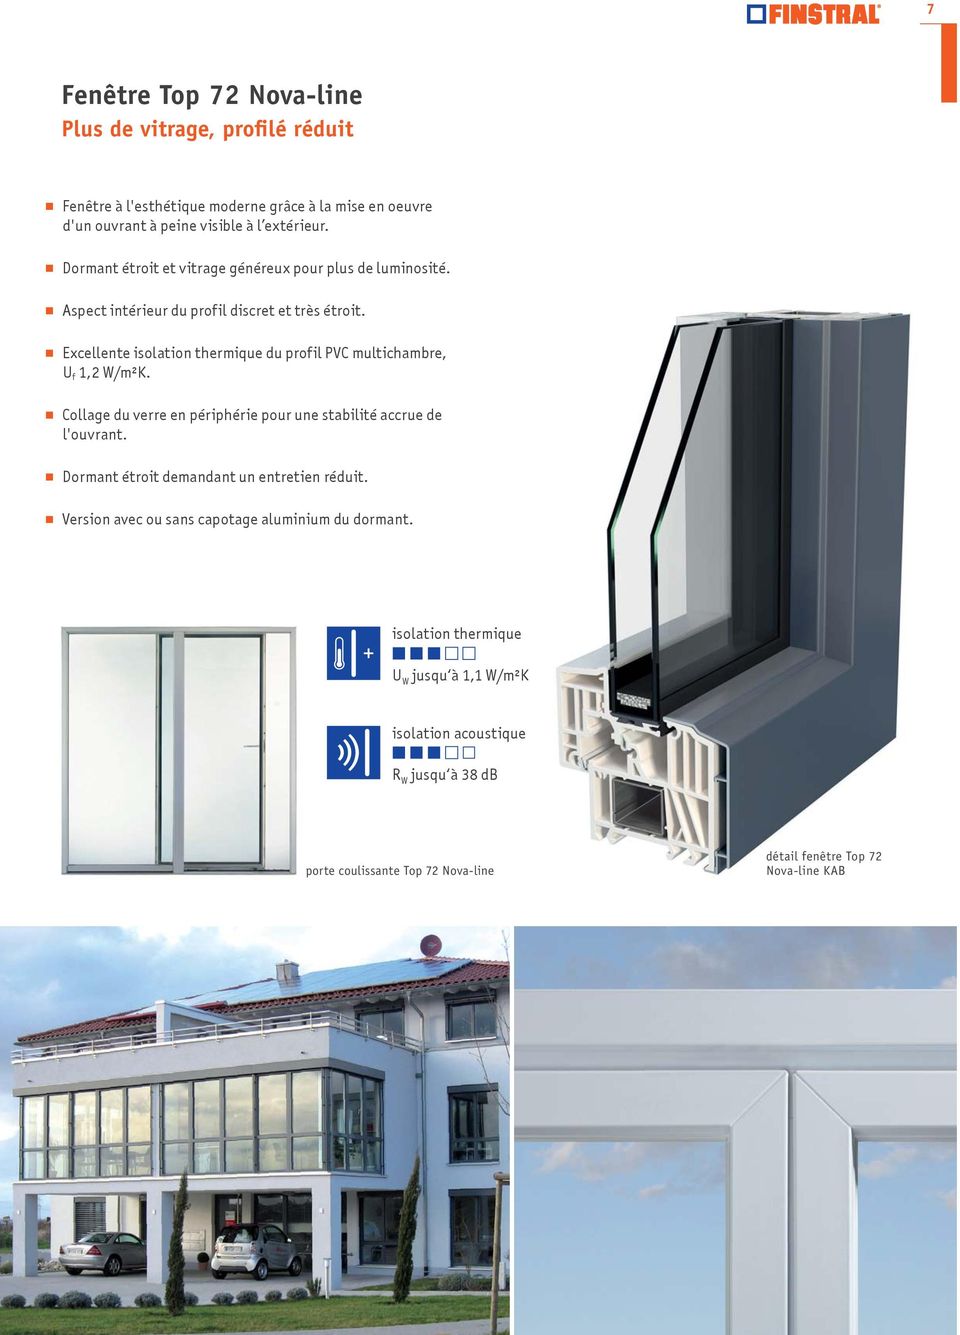 Excellente isolation thermique du profil PVC multichambre, U f 1,2 W/m²K. Collage du verre en périphérie pour une stabilité accrue de l'ouvrant.